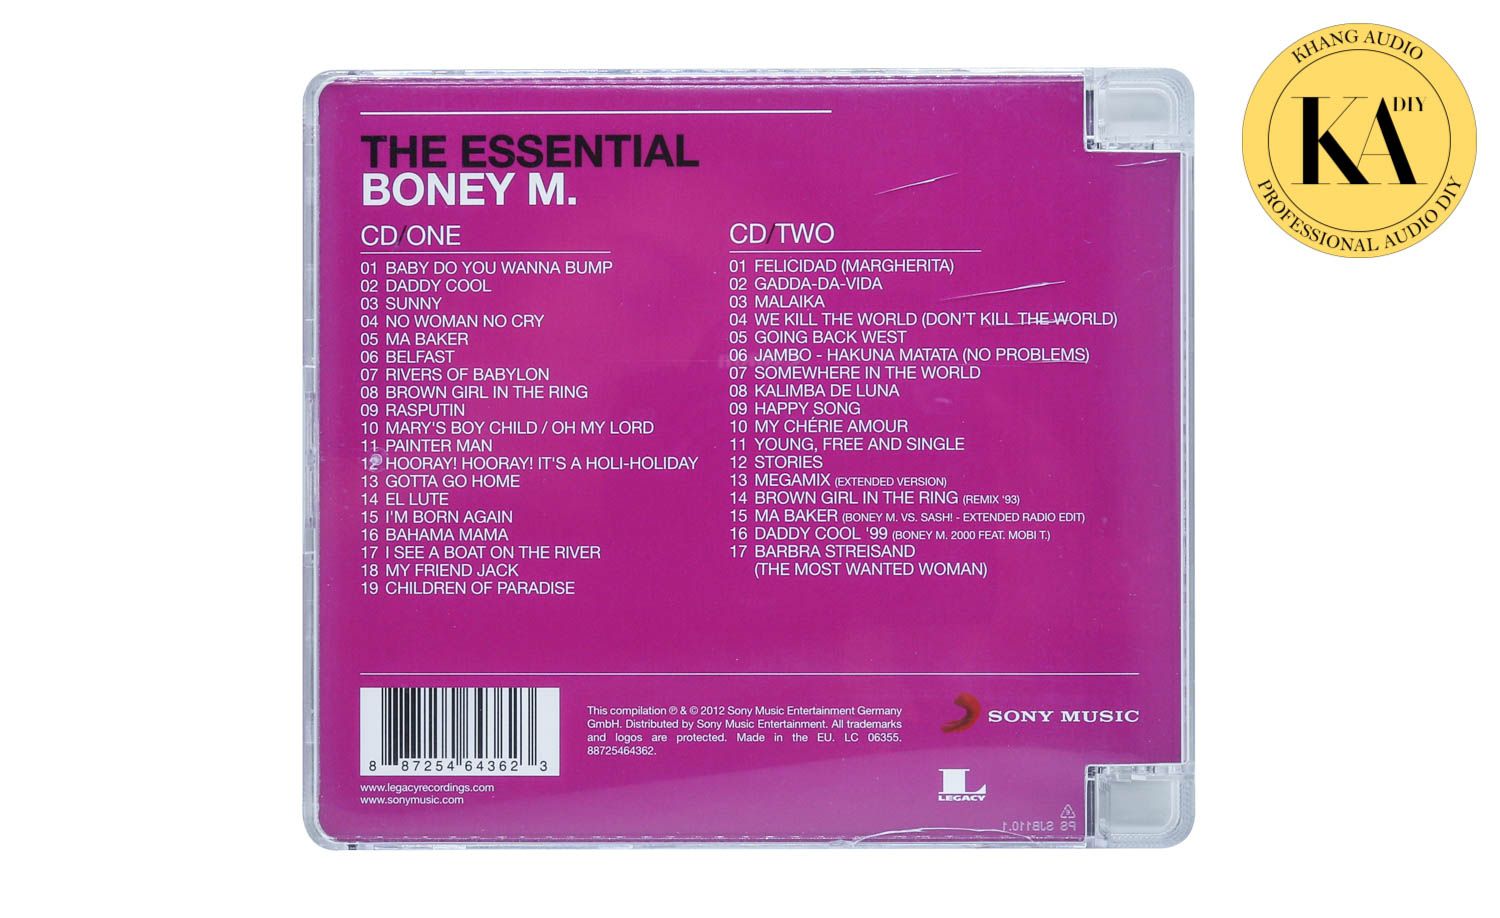 The Essential Boney M. 